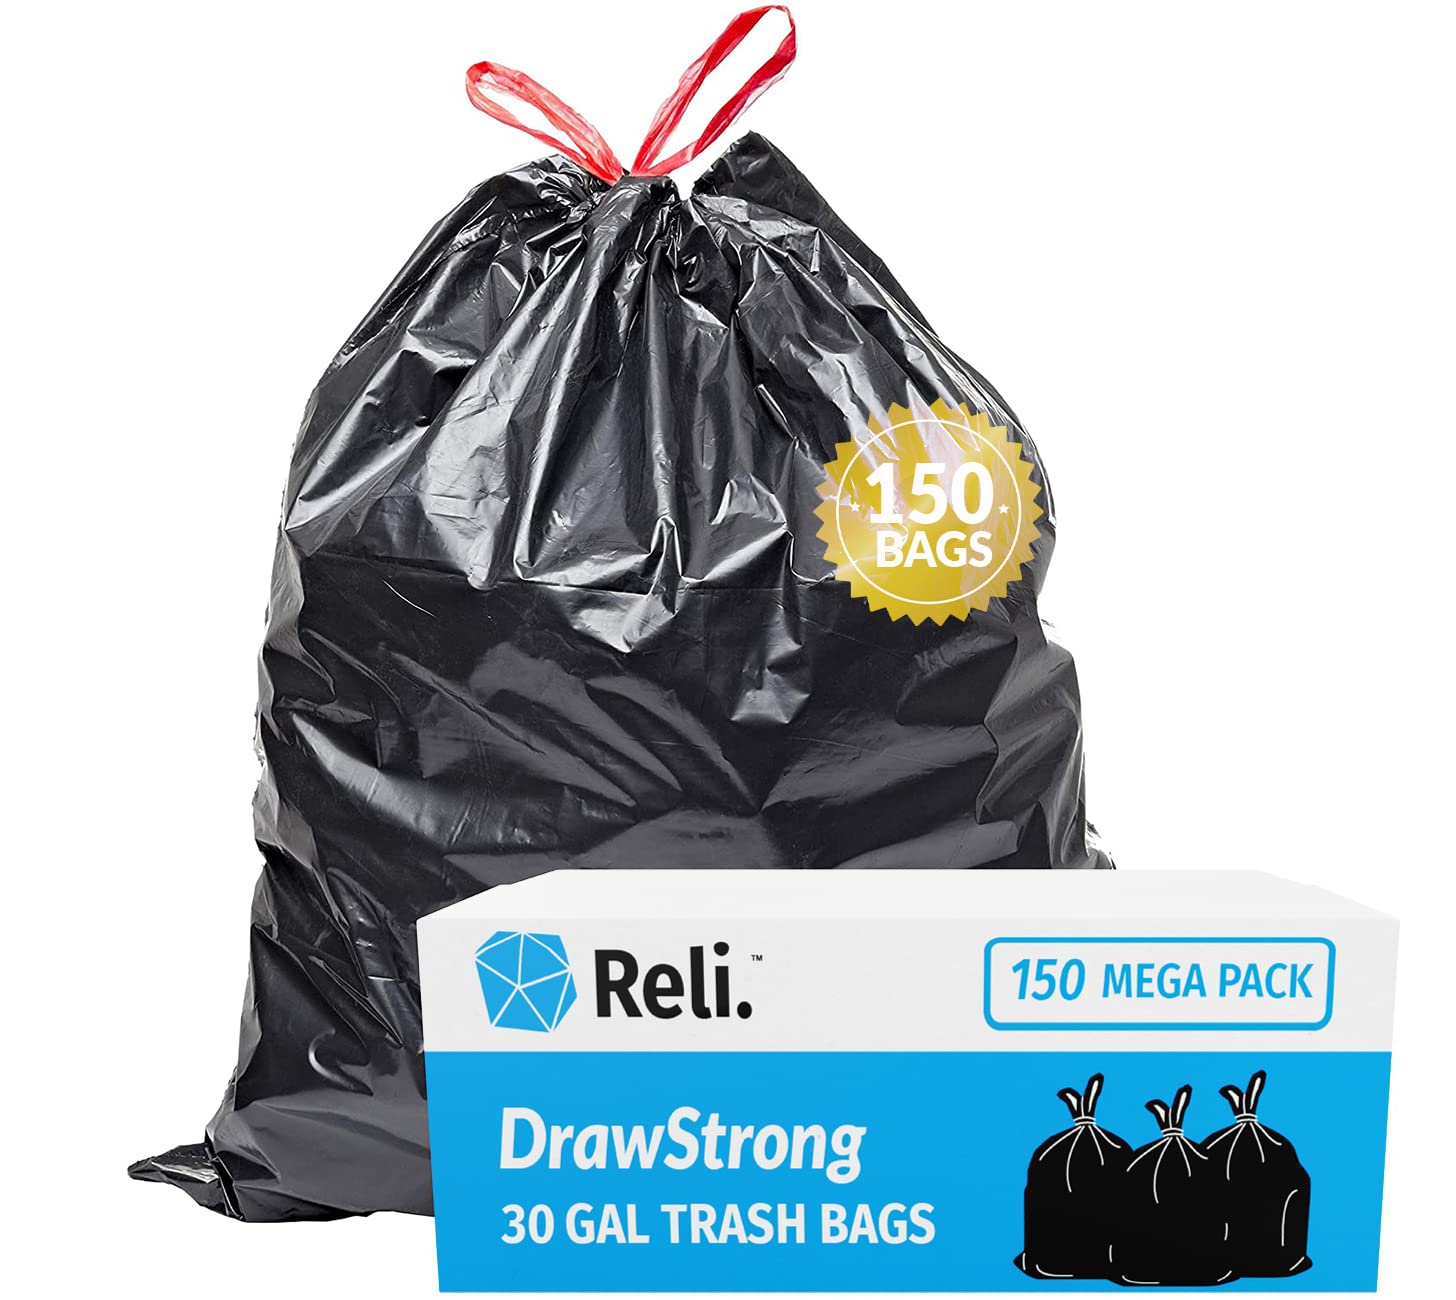 Trash Bags 33 Gallon Large Black Garbage